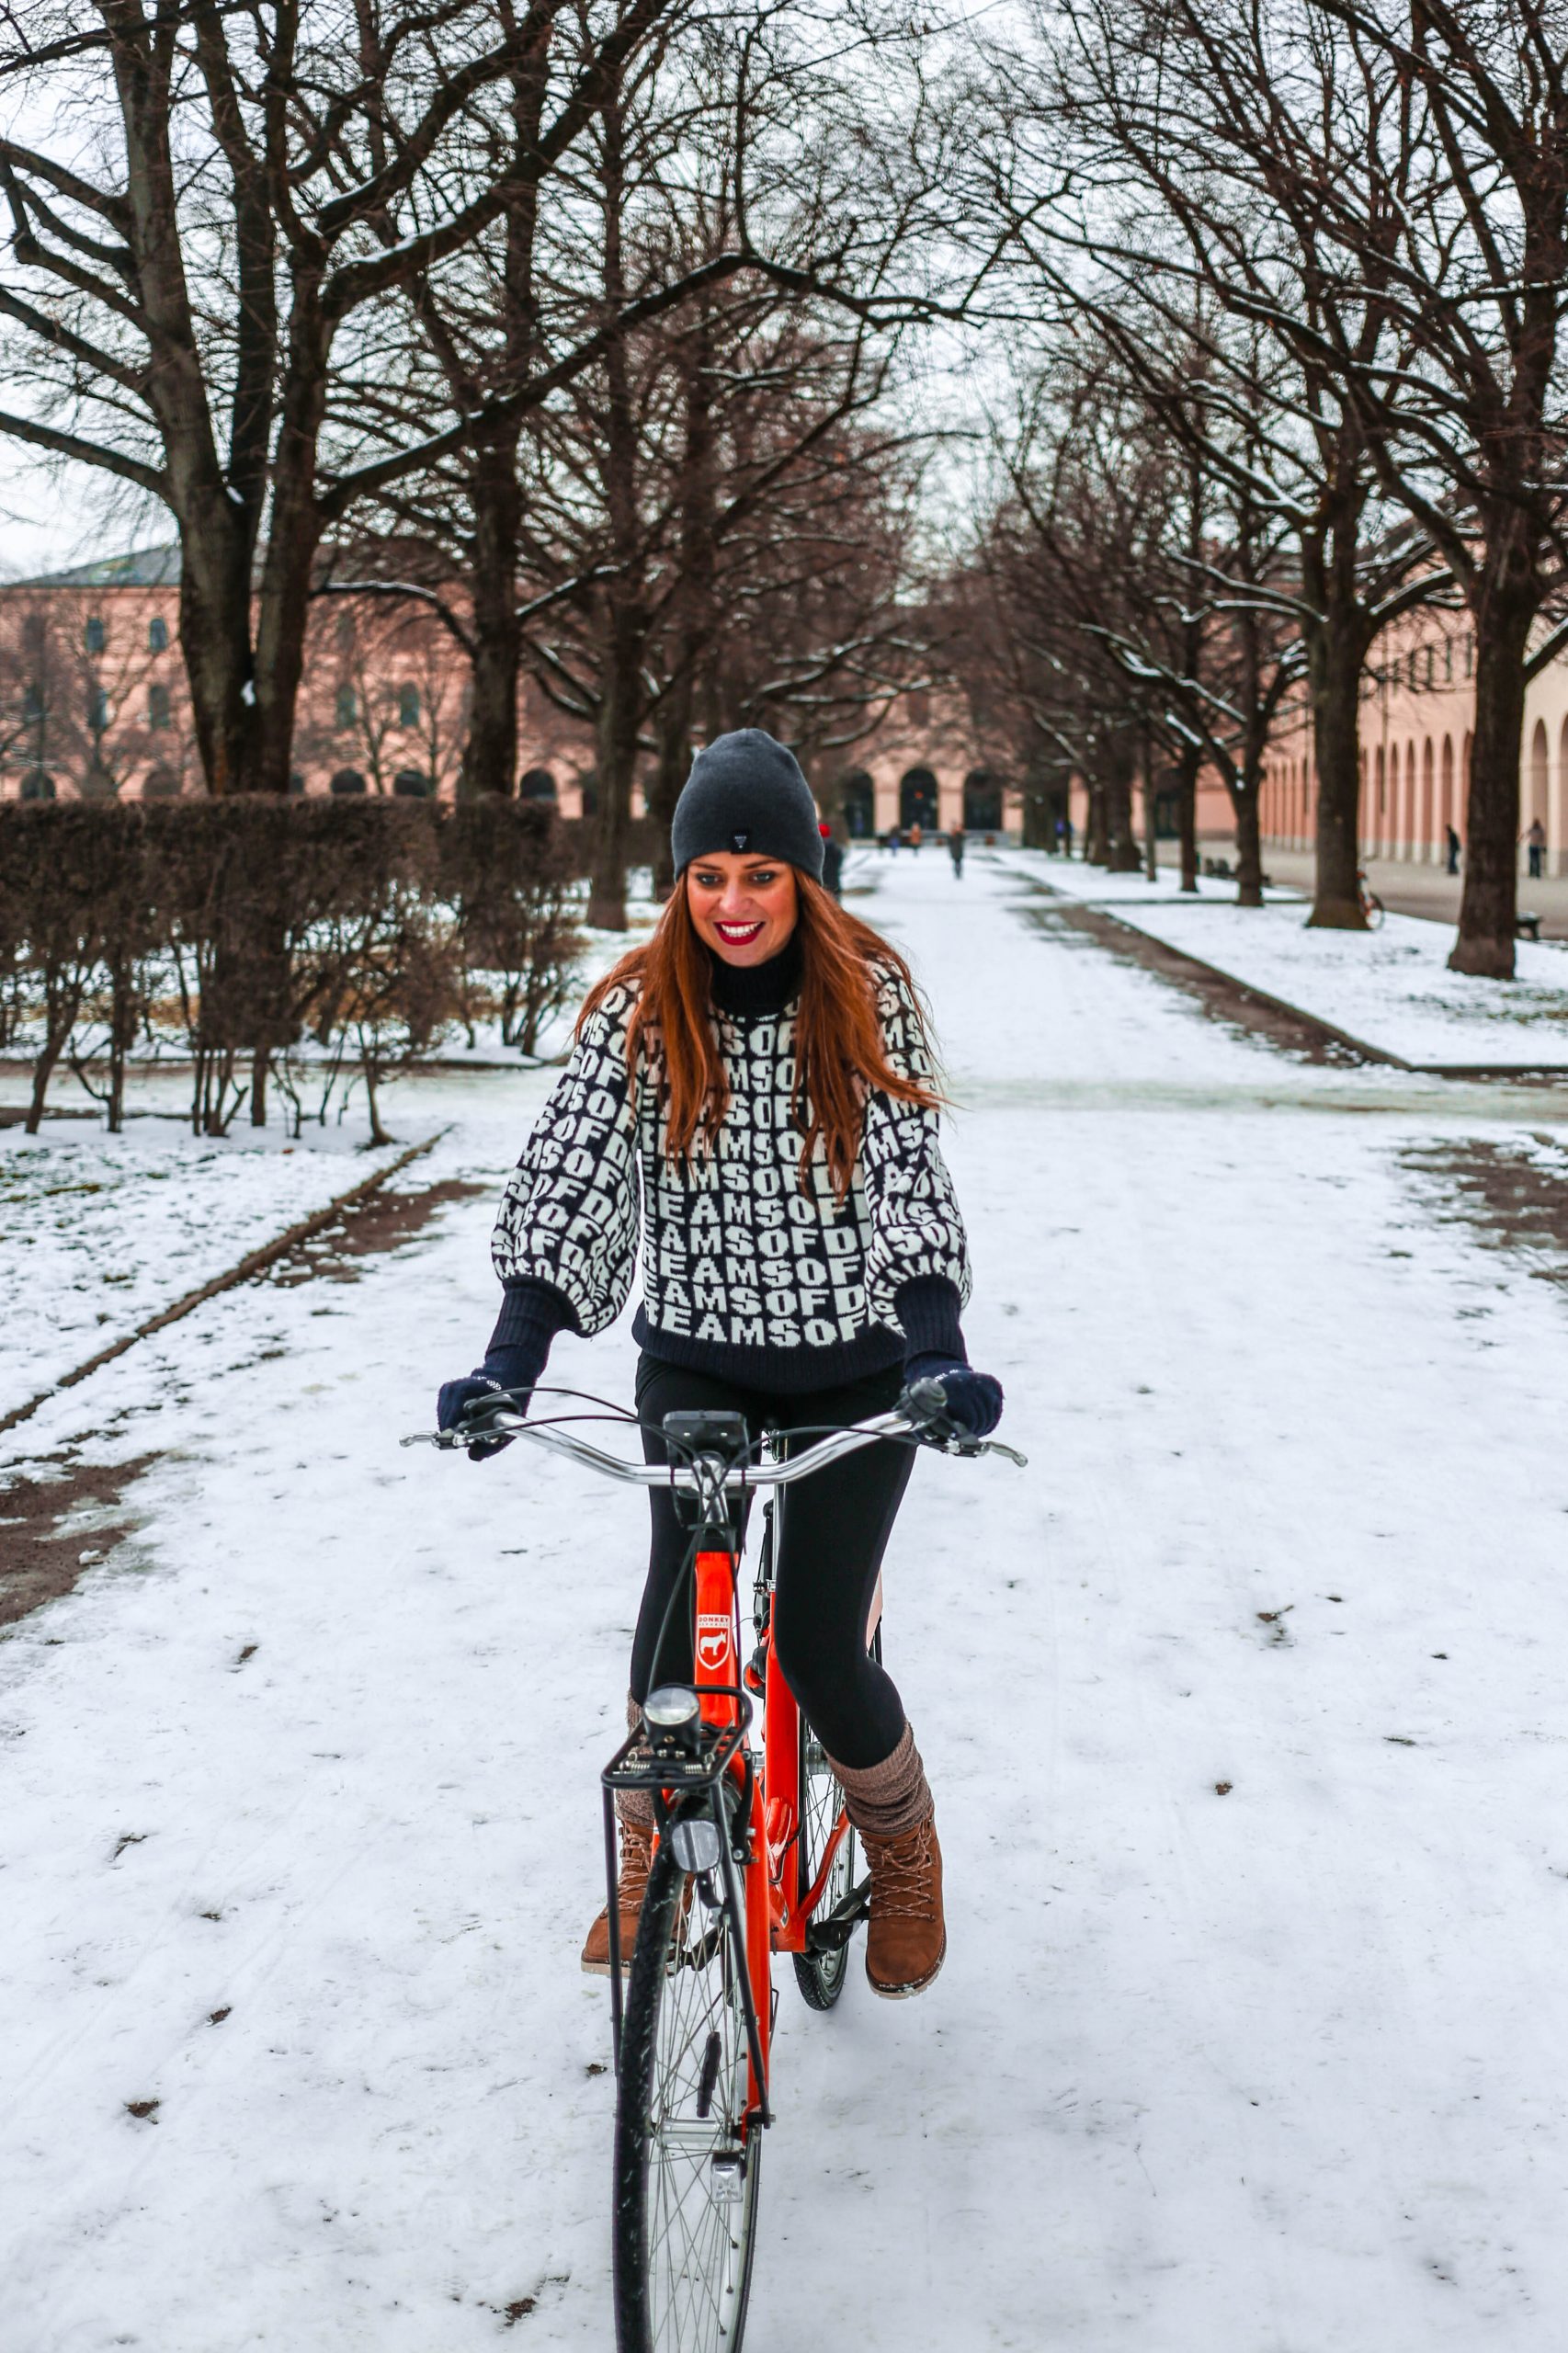 Mit dem Fahrrad durch den Winter  So sollten Sie ausgerüstet sein